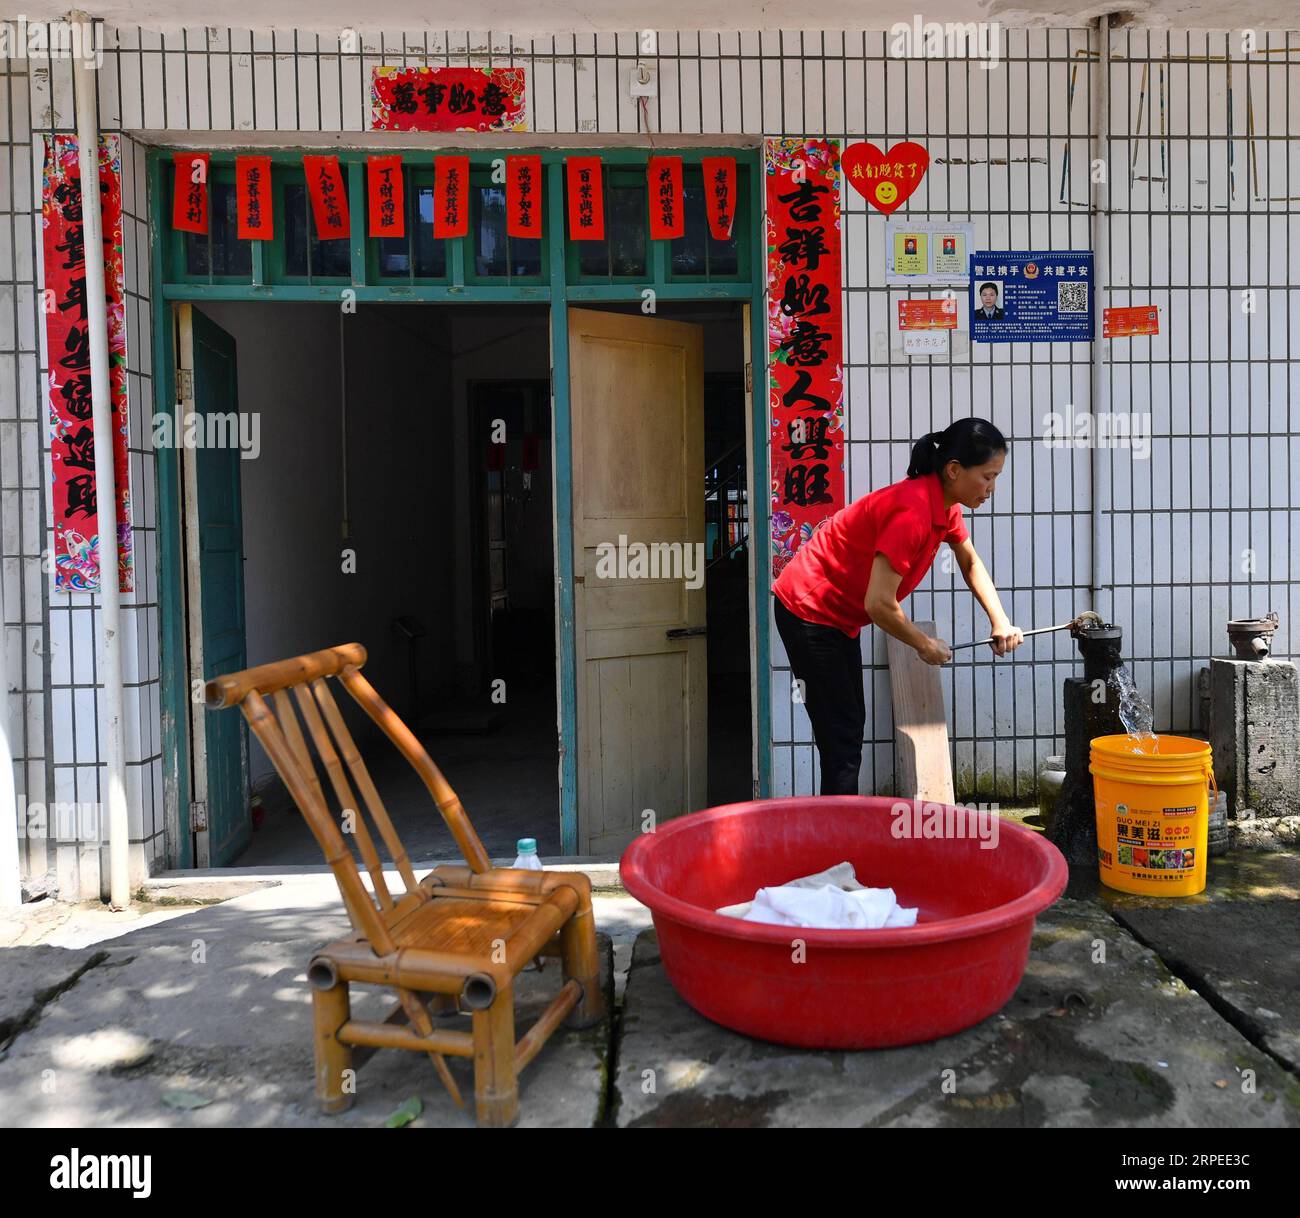 (190826) -- NANCHANG, 26. August 2019 -- Liu Lihong holt Wasser, um Kleidung zu Hause in der Gemeinde Dabaidi der Stadt Ruijin, ostchinesische Provinz Jiangxi, 19. August 2019 zu waschen. Liu Lihong trägt eine schwarze Baskenmütze und ein Paar High-Heels und frittiert Fleisch und Gemüse in Kochherden, während sie Musik hört, eine typische Szene in ihrer täglichen Routine. Der 40-jährige Koch arbeitet seit drei Jahren für die lokale Regierung der Gemeinde Dabaidi. Vor seiner Tätigkeit als professioneller Koch war Liu seit seinem 19. Lebensjahr Wanderarbeiter in einer Bekleidungsfabrik in Shantou in der südchinesischen Provinz Guangdong Stockfoto